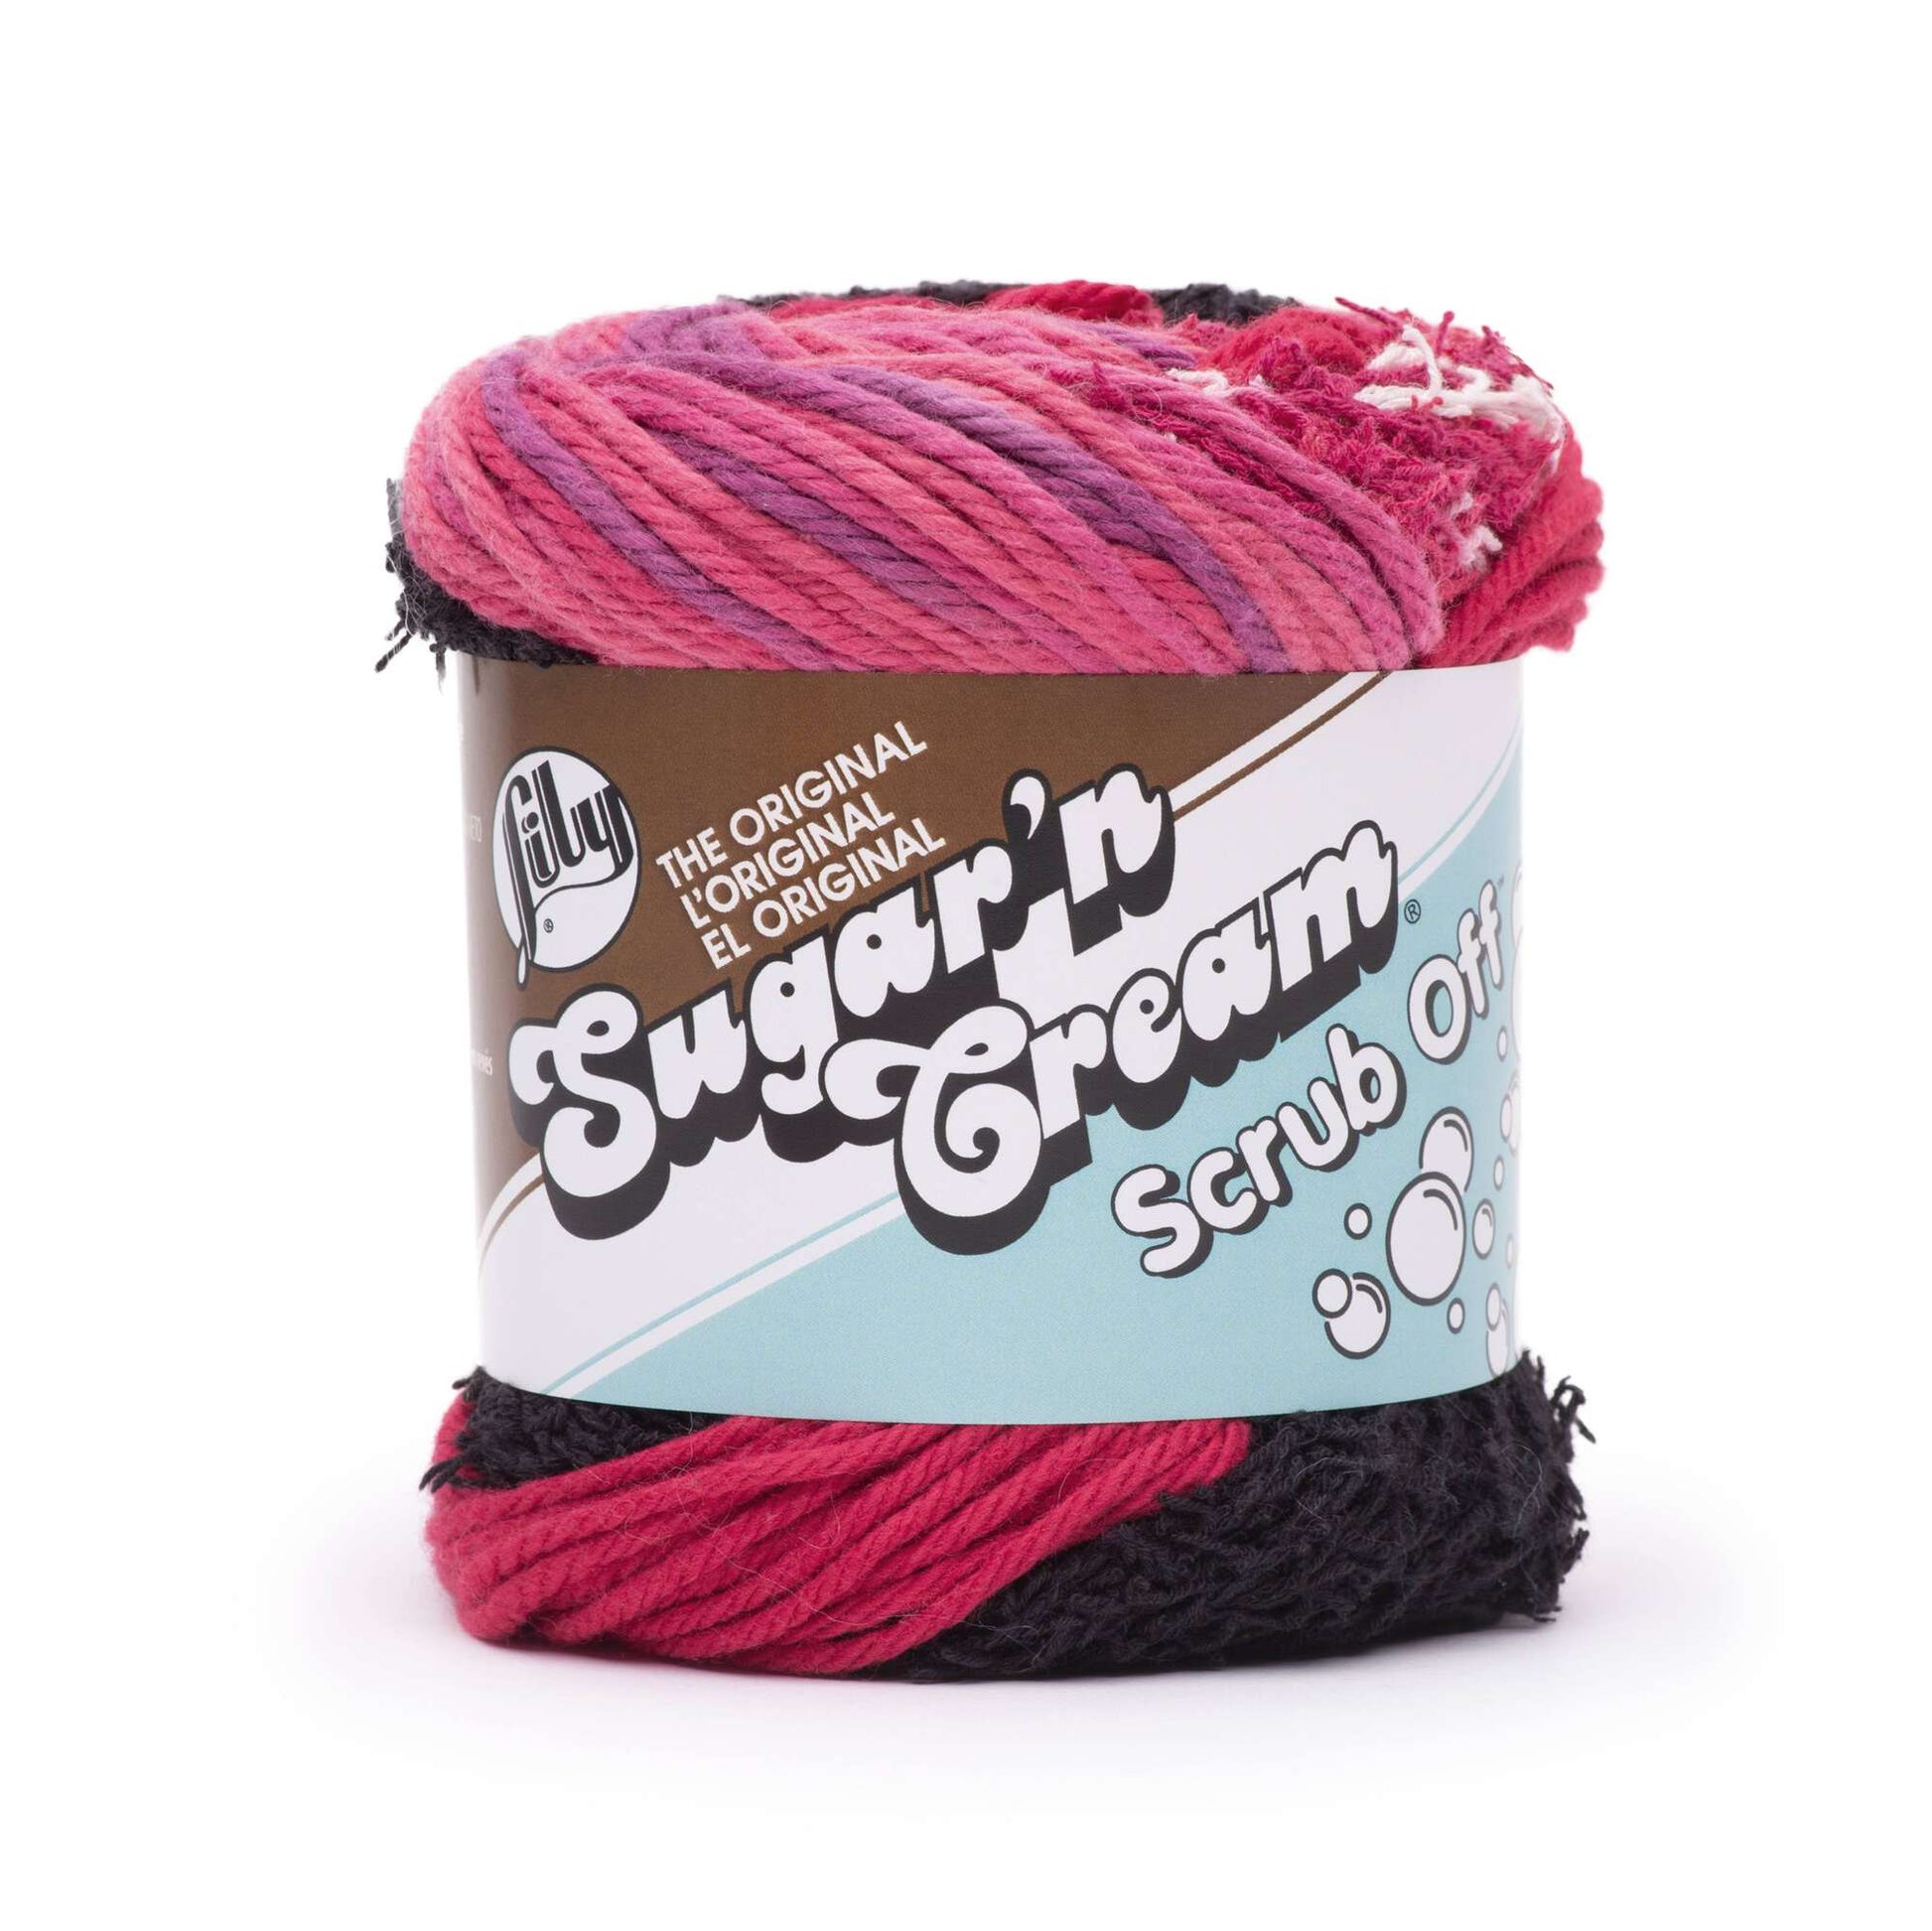 Lily Sugar'n Cream Scrub Off Yarn - Discontinued Bowl Full of Jelly